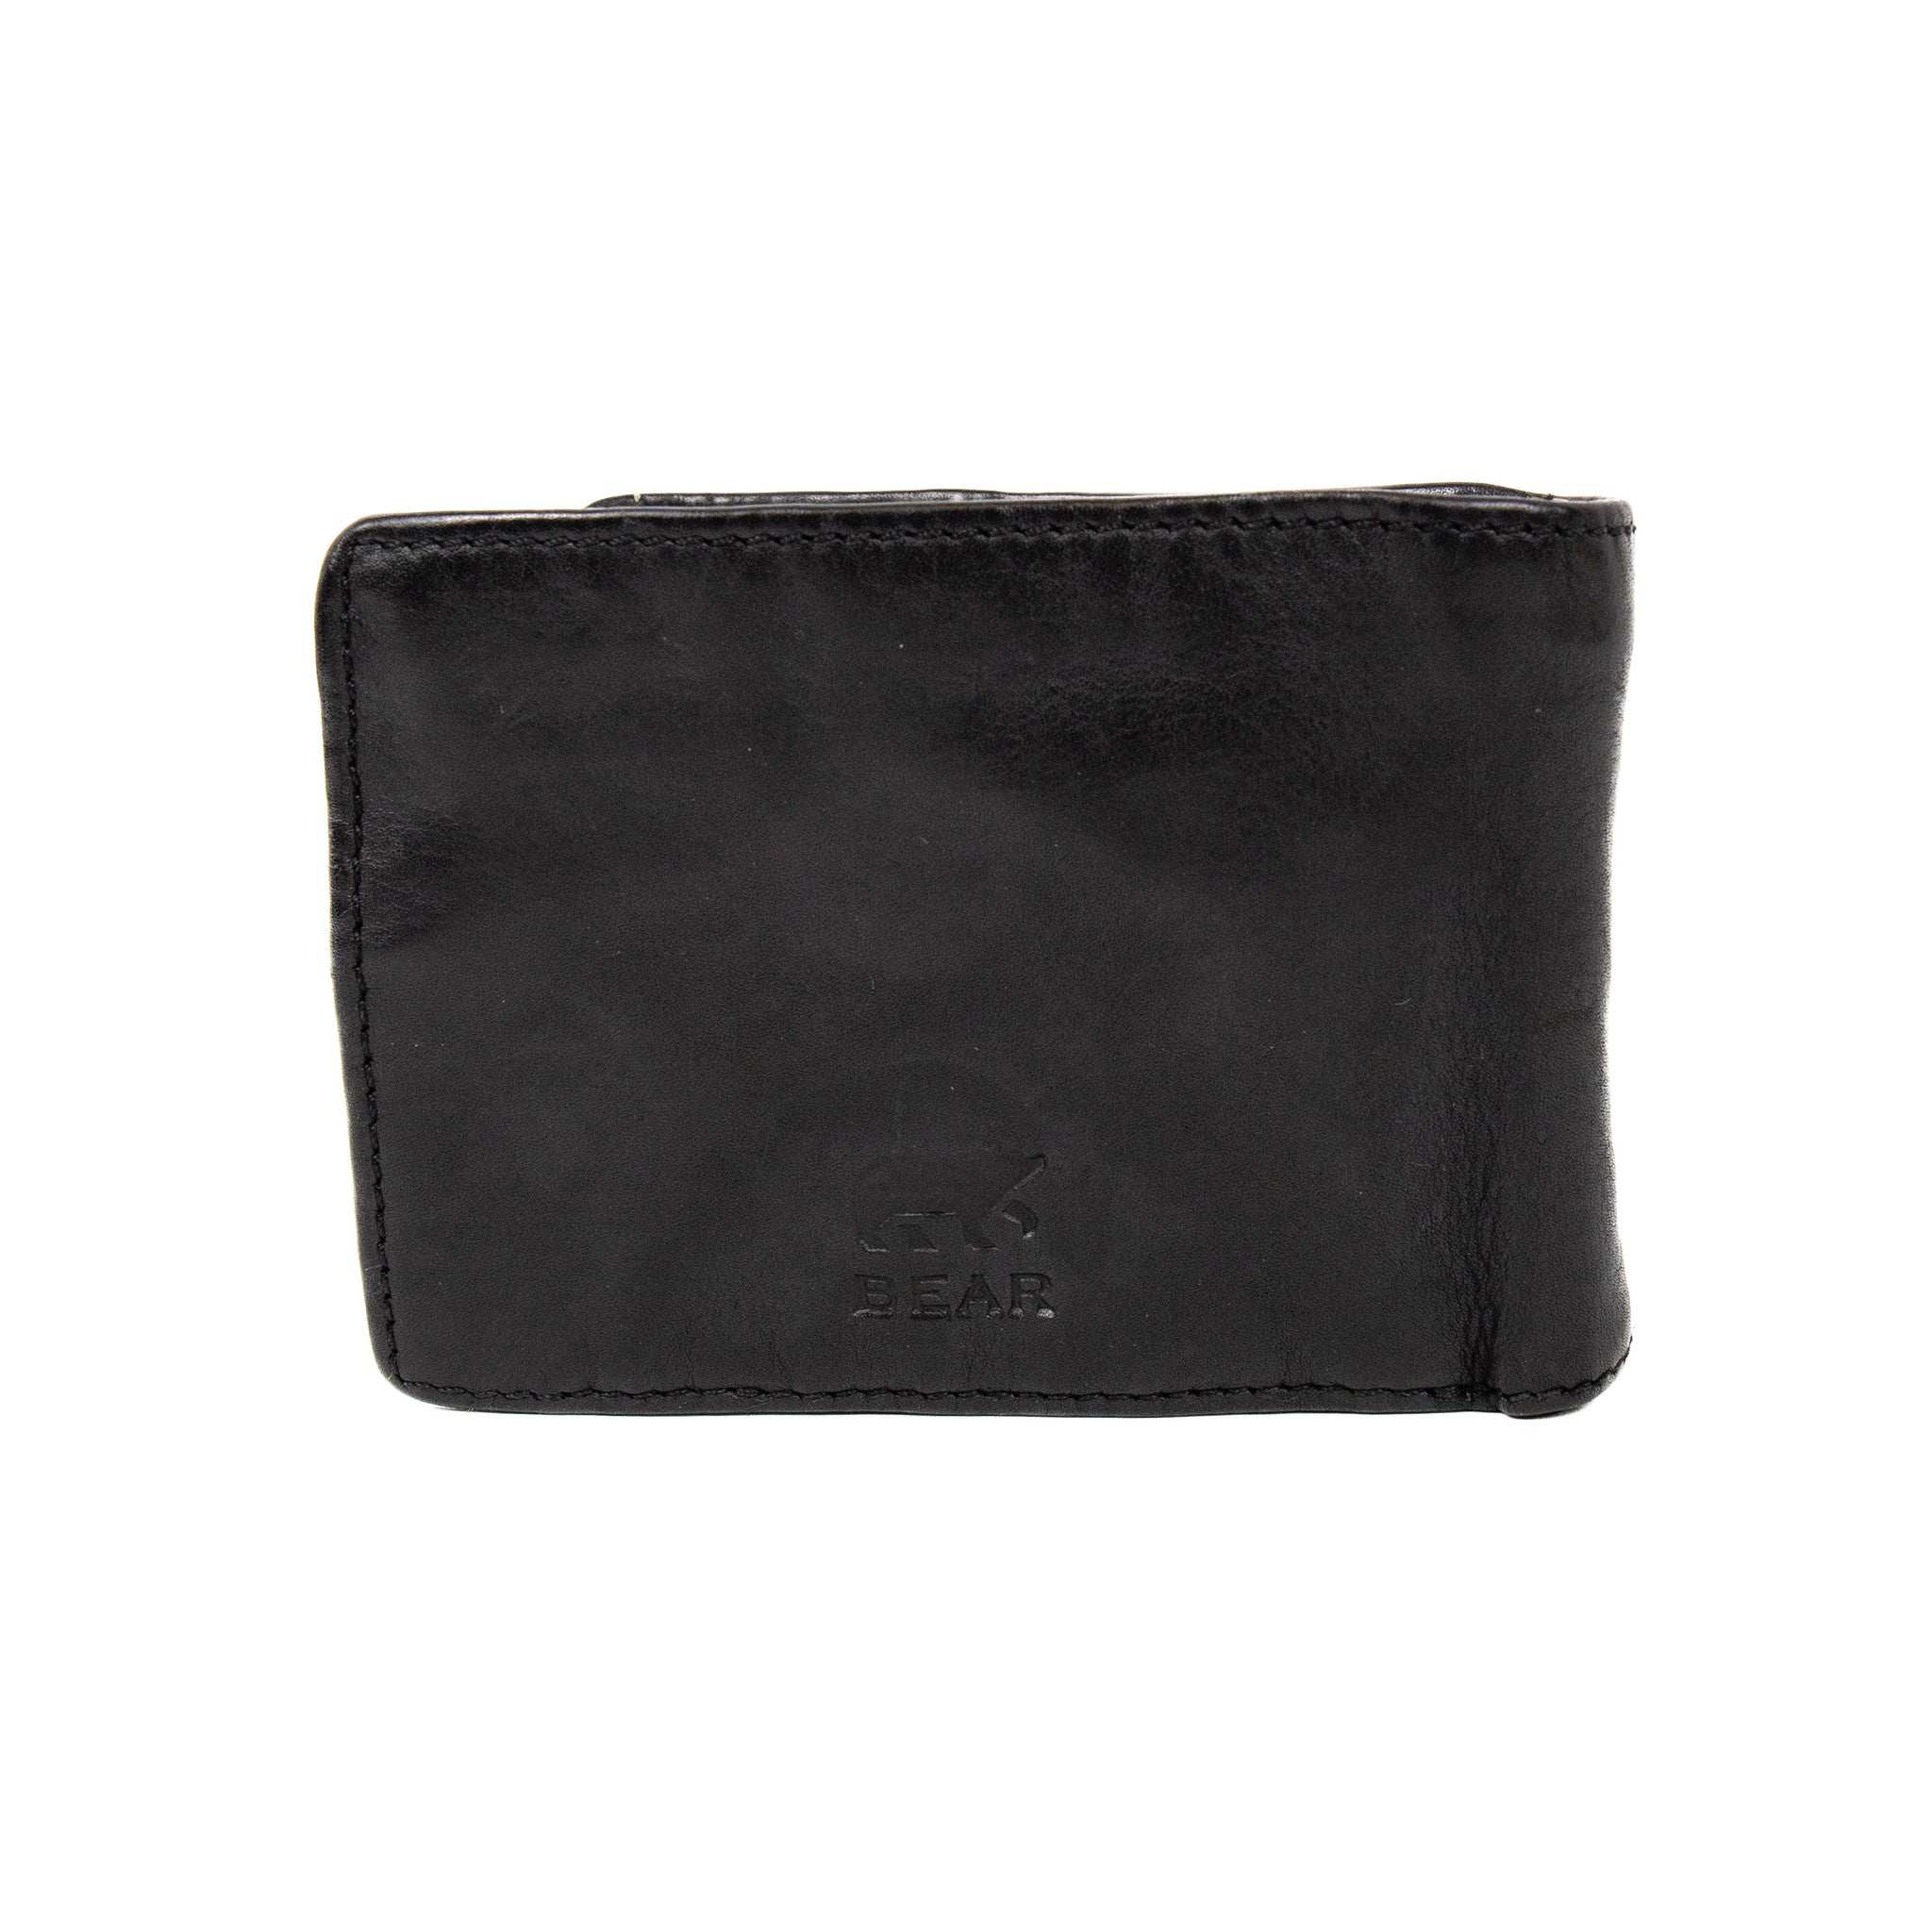 Brieftasche 'Joep' schwarz - CL 18839